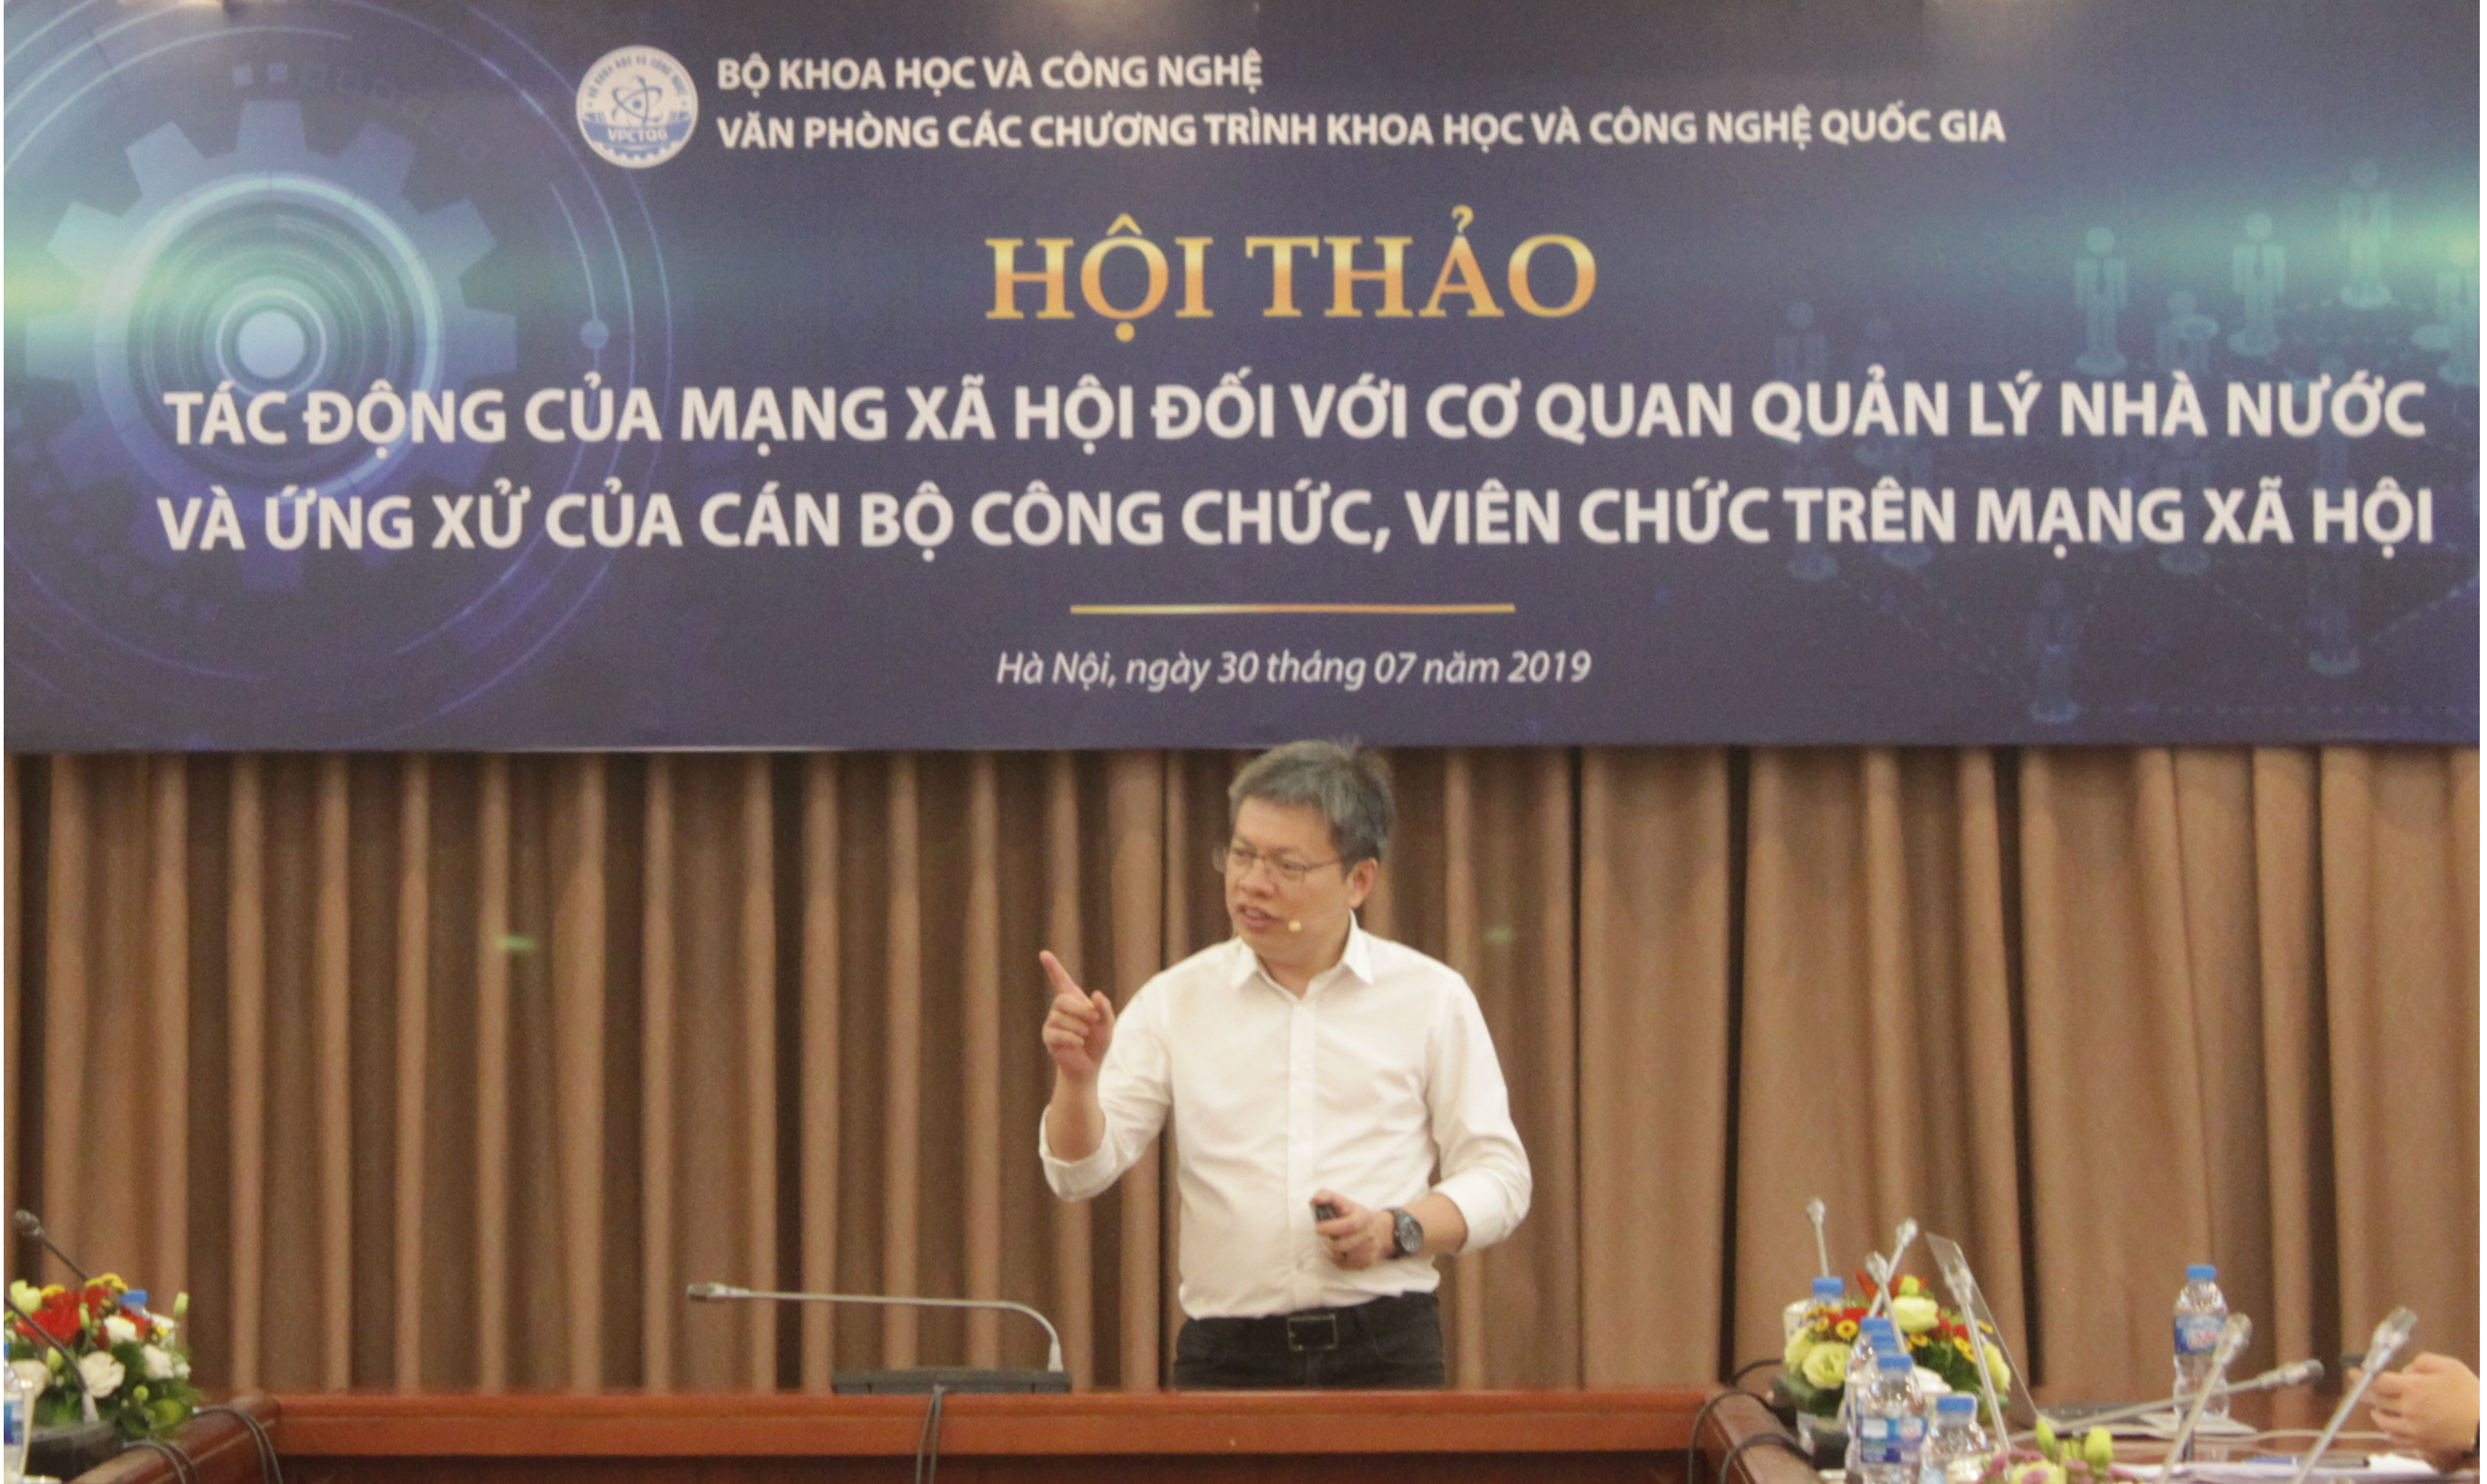 Ông Lê Quốc Vinh chia sẻ với các cán bộ của Bộ KH&CN về kinh nghiệm ứng xử trên mạng xã hội | Ảnh: BTC